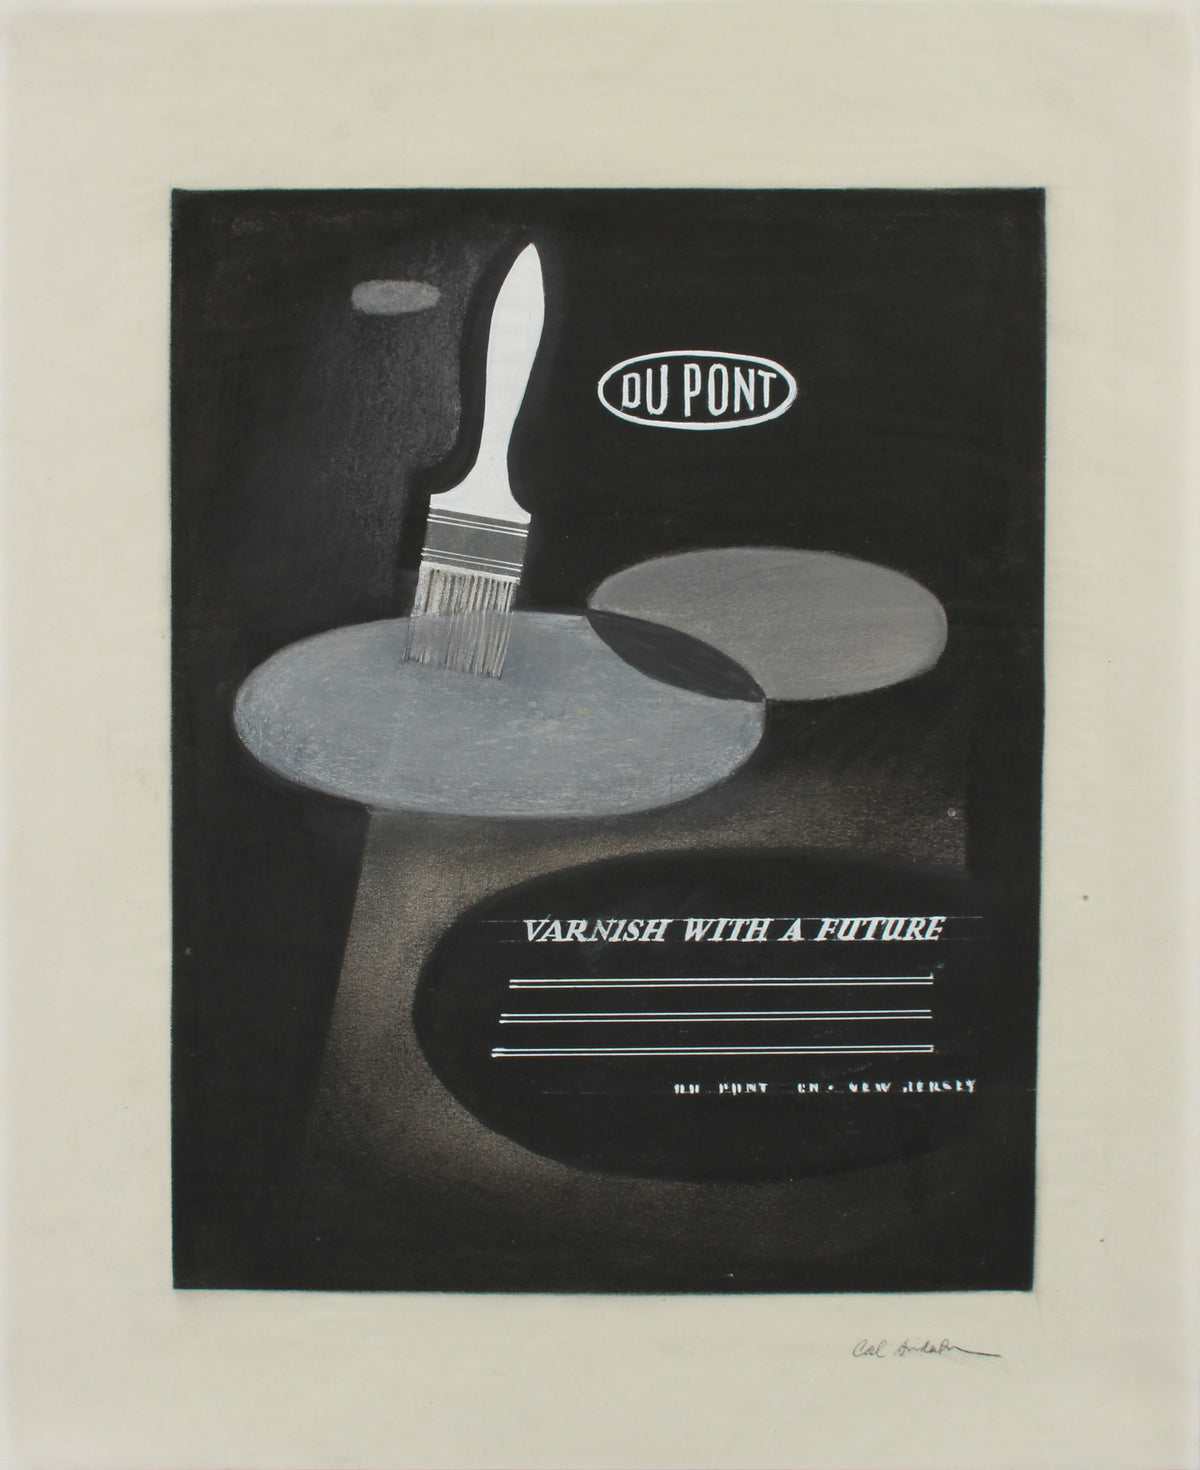 &lt;i&gt;DuPont Varnish&lt;/i&gt; &lt;br&gt;Original Advertising Illustration &lt;br&gt;1950-60s Mixed Media &lt;br&gt;&lt;br&gt;#A9018